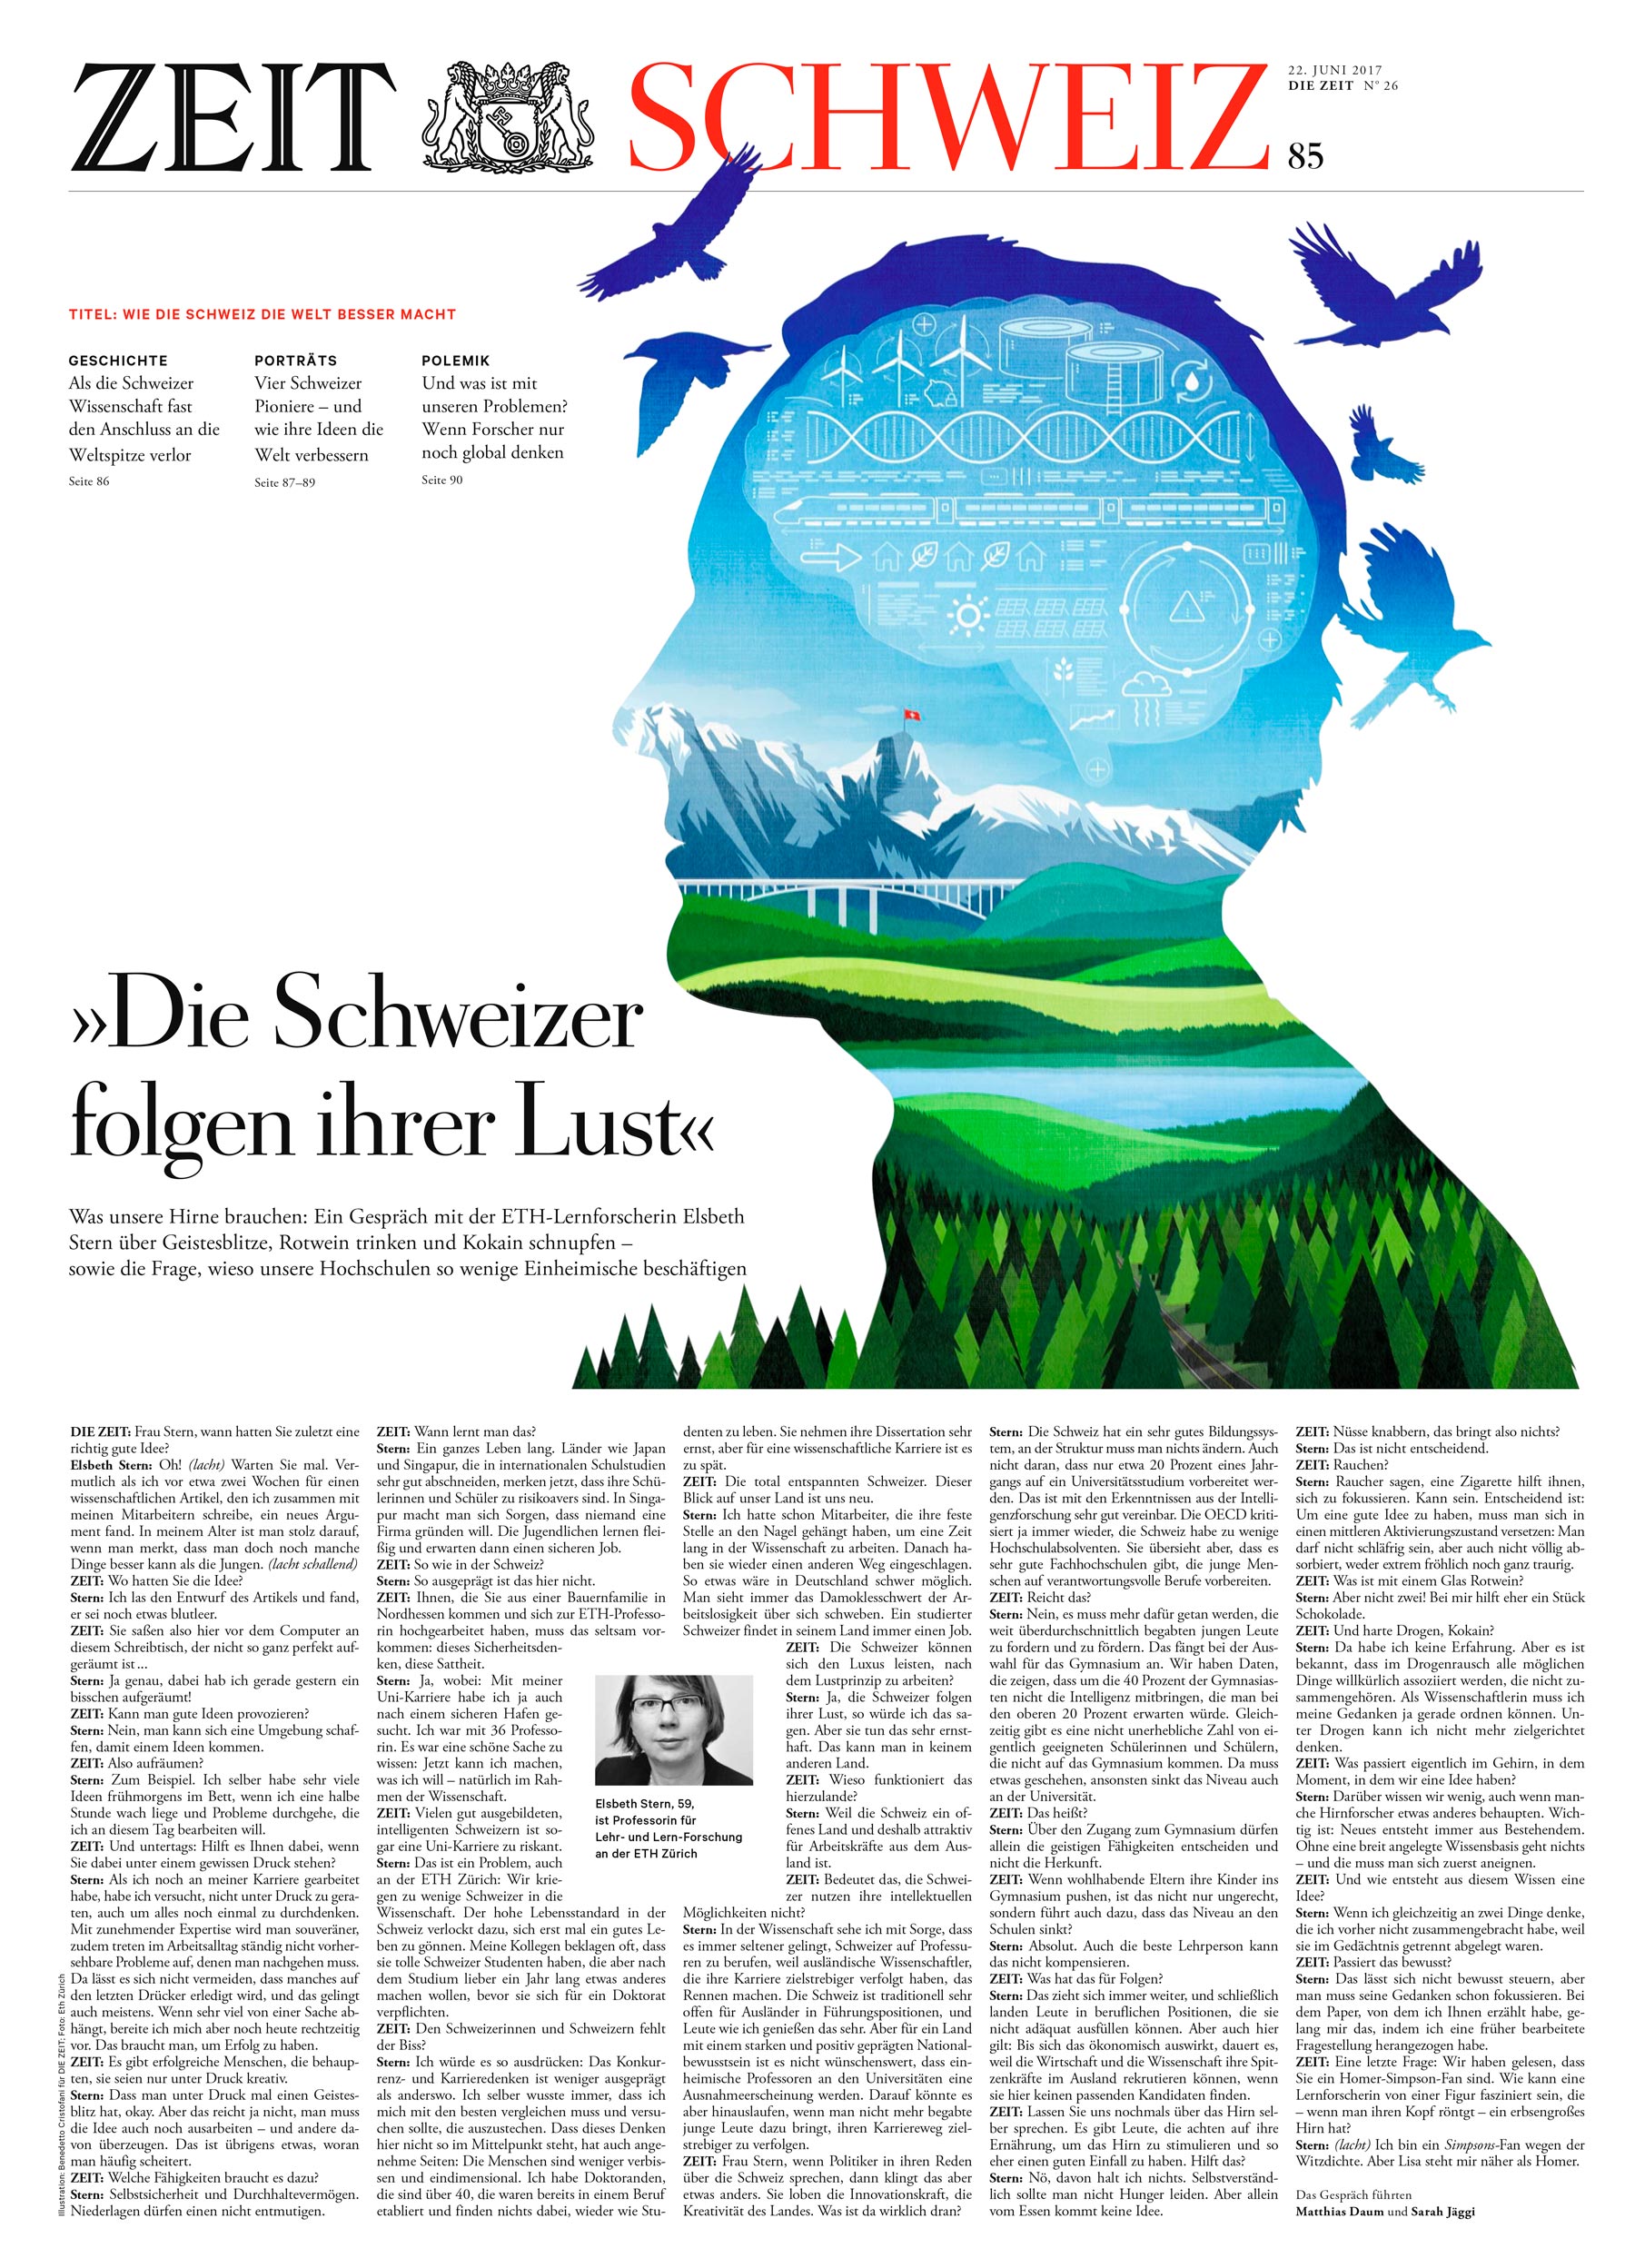 Die_Zeit_Schweiz_Swiss_Scients_Cristofani_Layout1.jpg